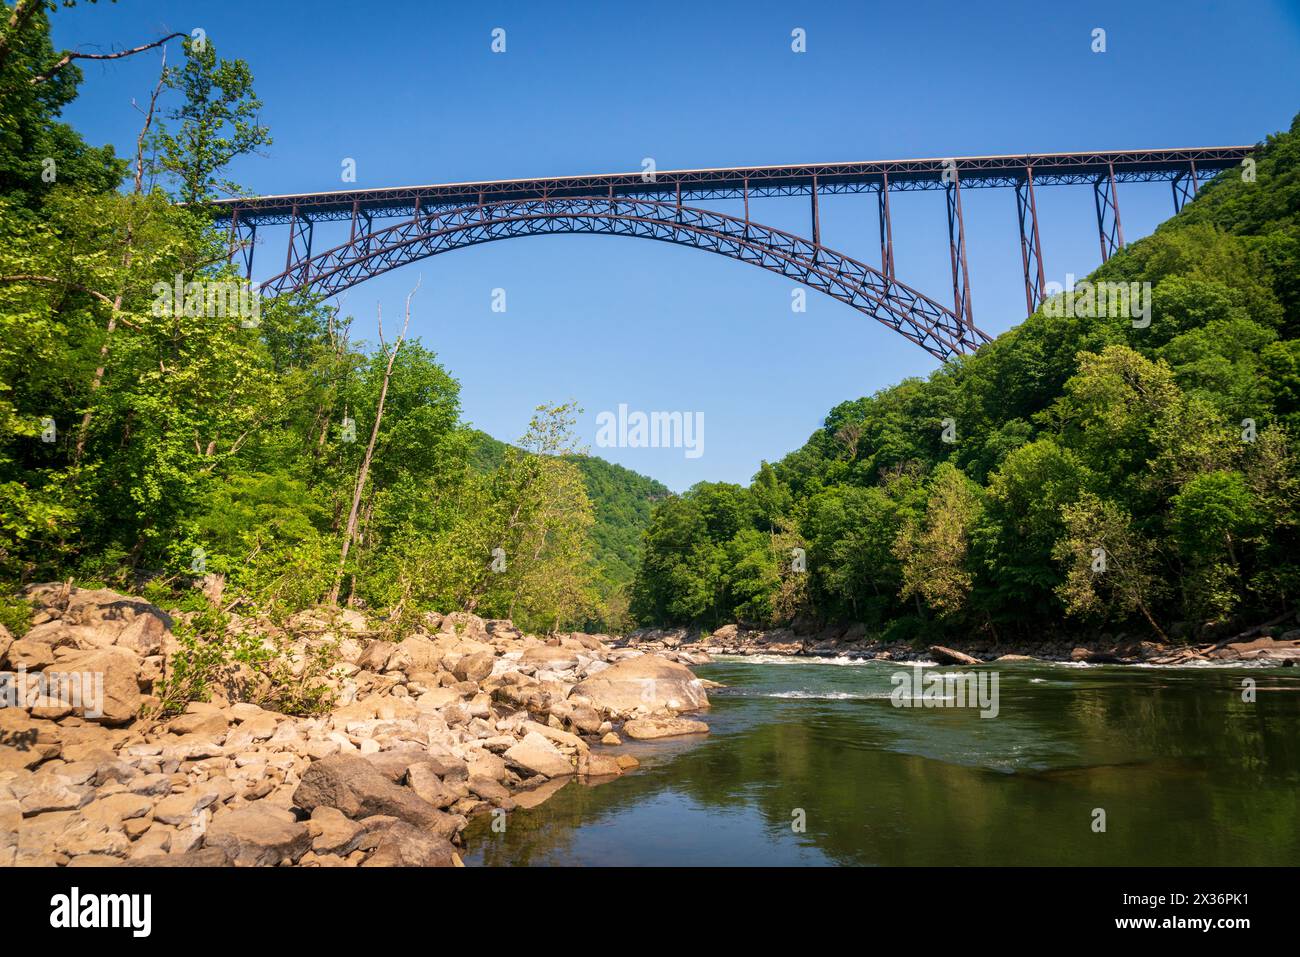 Die New River Gorge Bridge, eine Stahlbogenbrücke, 3.030 Meter lang über die New River Gorge bei Fayetteville, West Virginia, in den Appalachen, Stockfoto